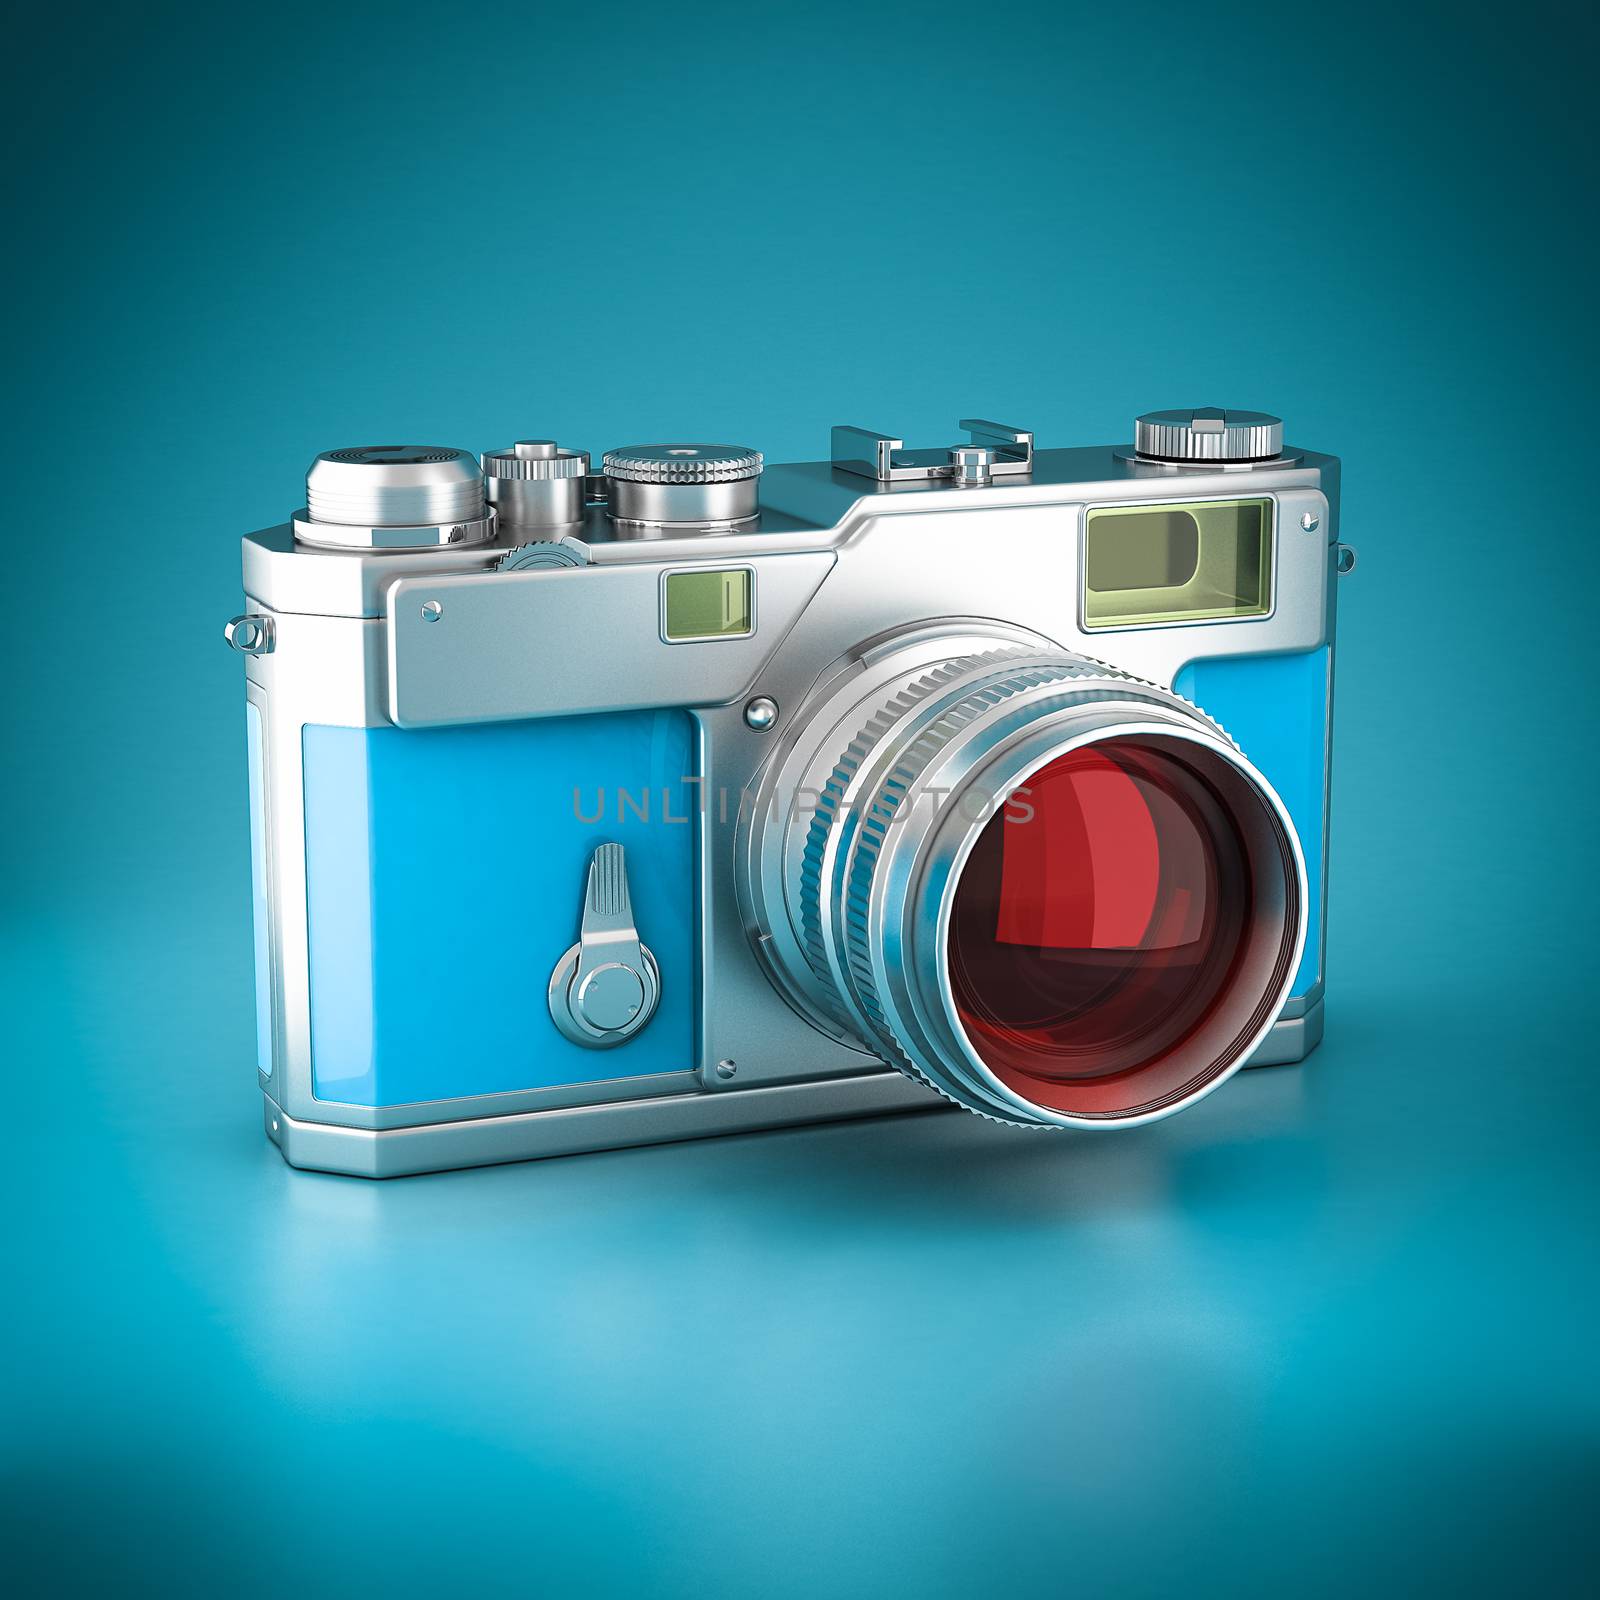 Digital camera 3d model image on blue background